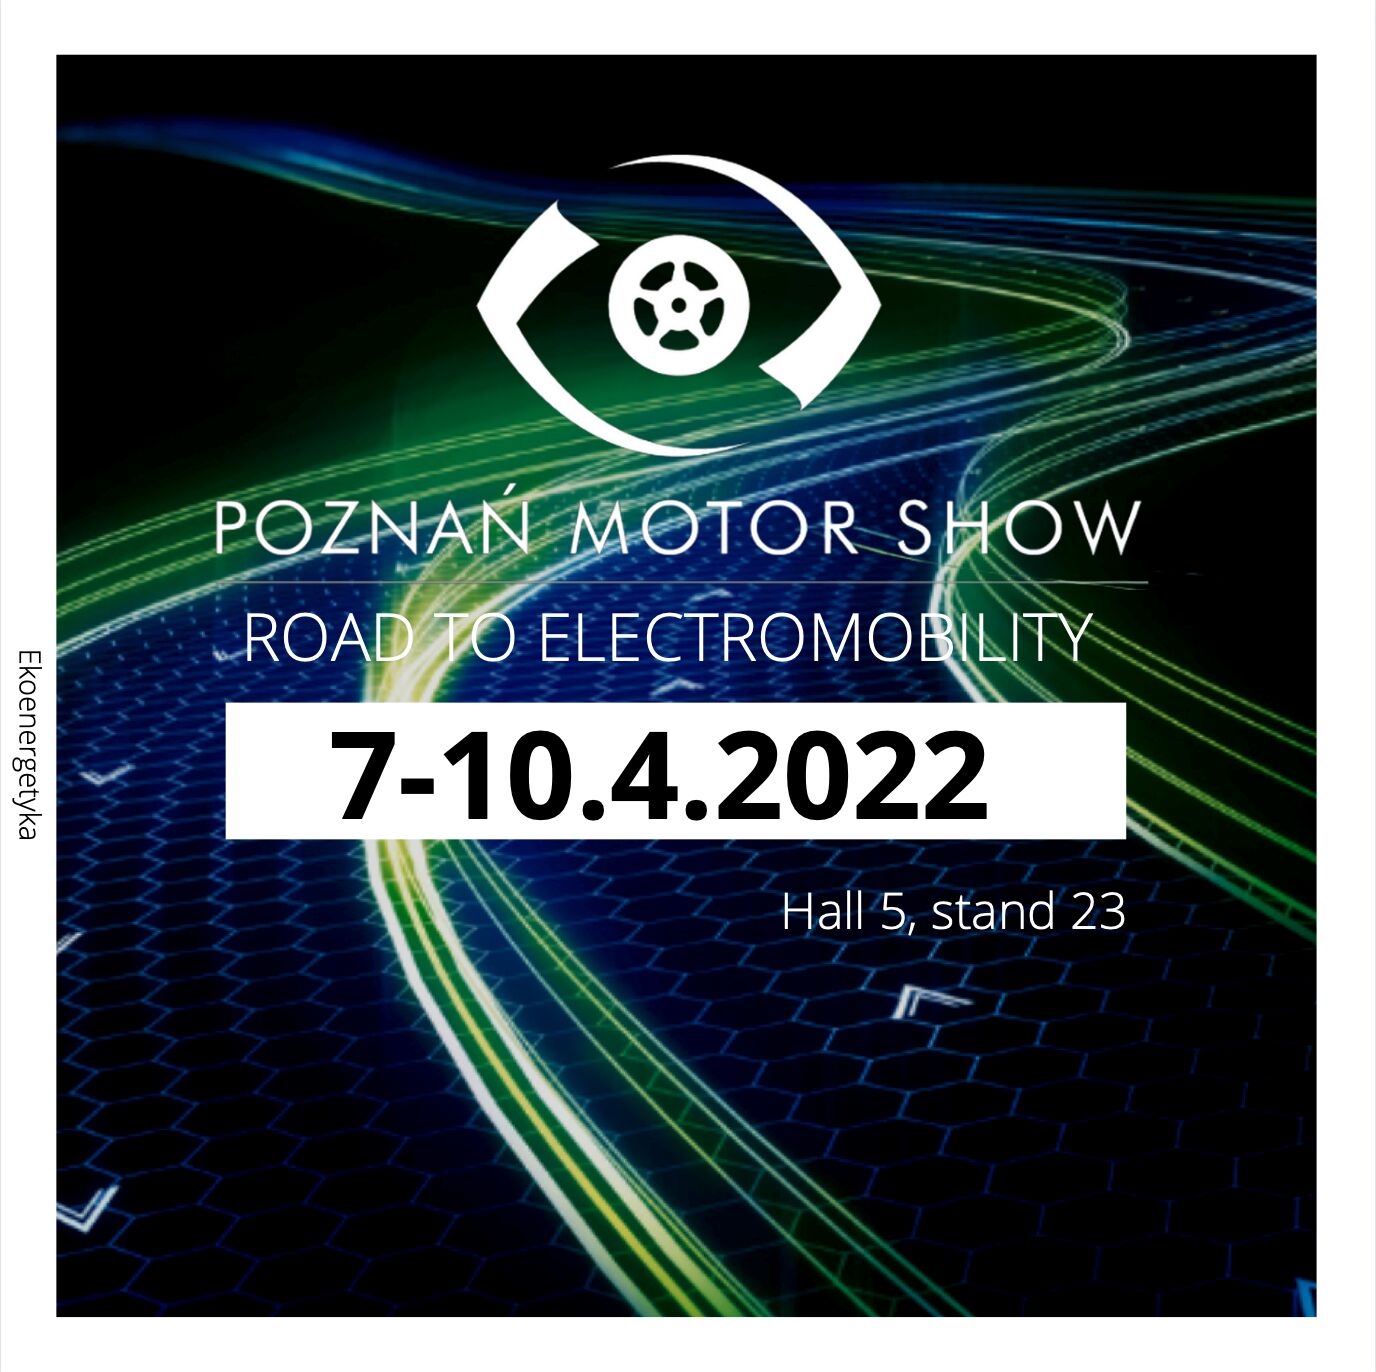 ekoenergetyka poznan motor show 2022, Ekoenergetyka &#8211; Poznań Motor Show 2022, Ekoenergetyka